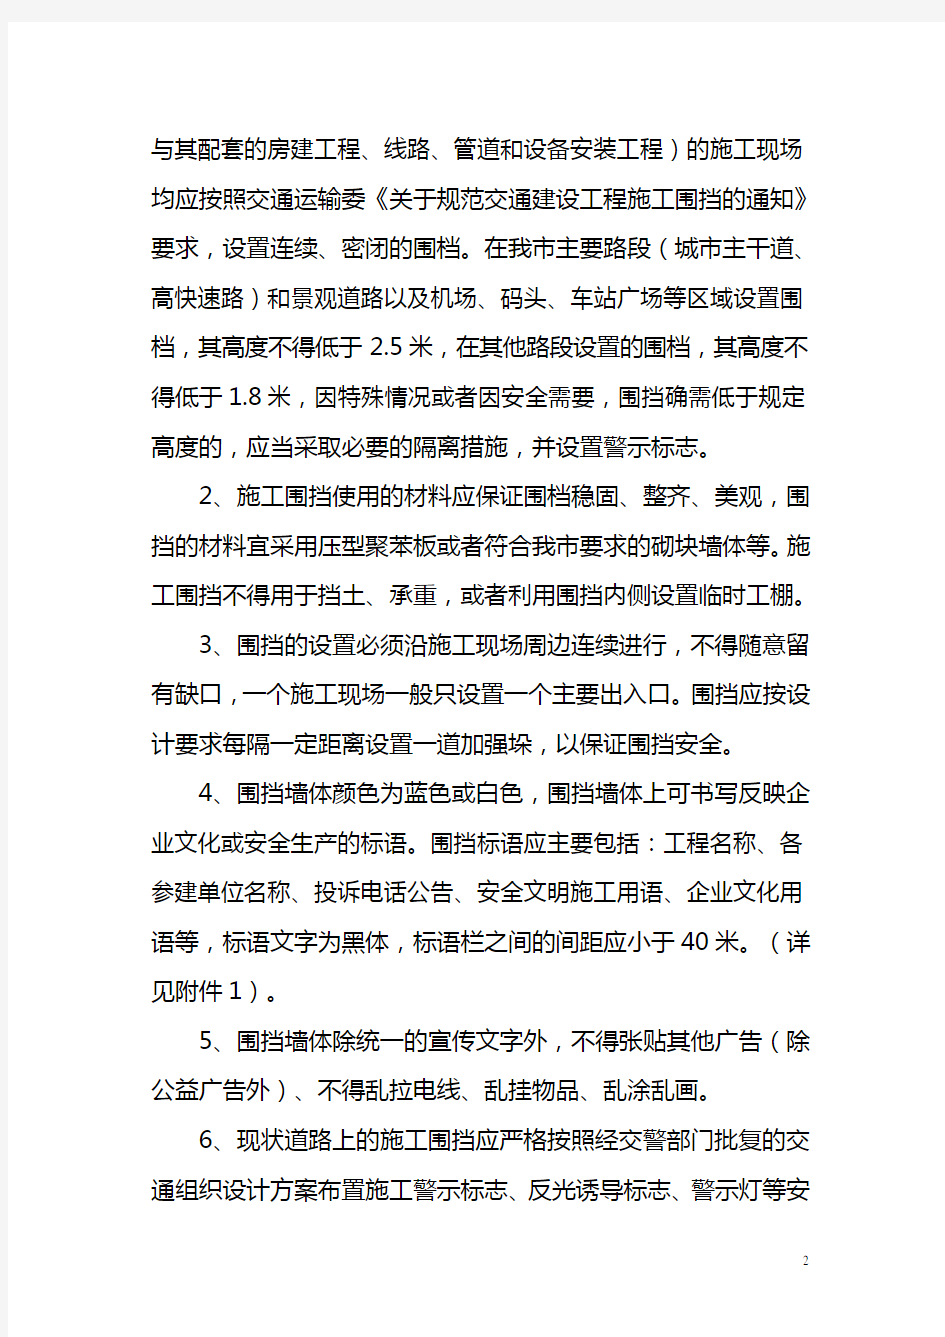 深圳市道路建设项目交通疏解施工组织指引